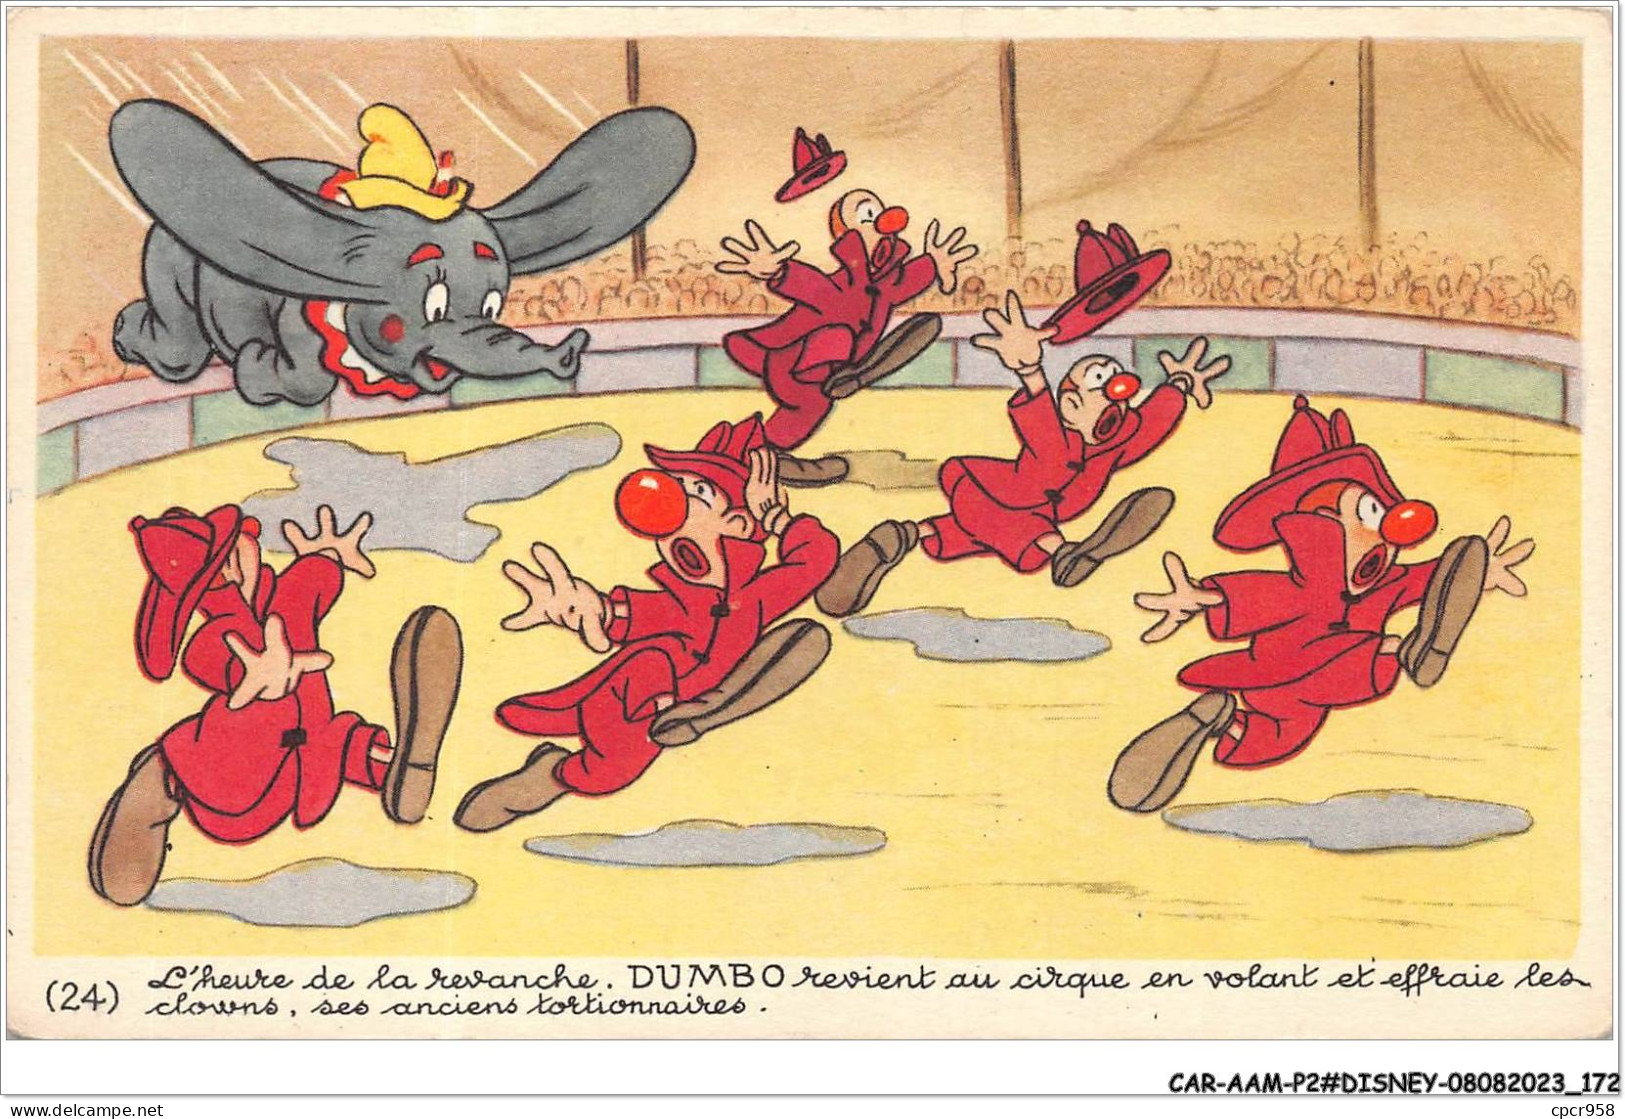 CAR-AAMP2-DISNEY-0188 - Dumbo - L'heure De La Revanche Dumbo Revient Au Cirque En Volant Et Effraie Les Clowns - N°24 - Disneyland